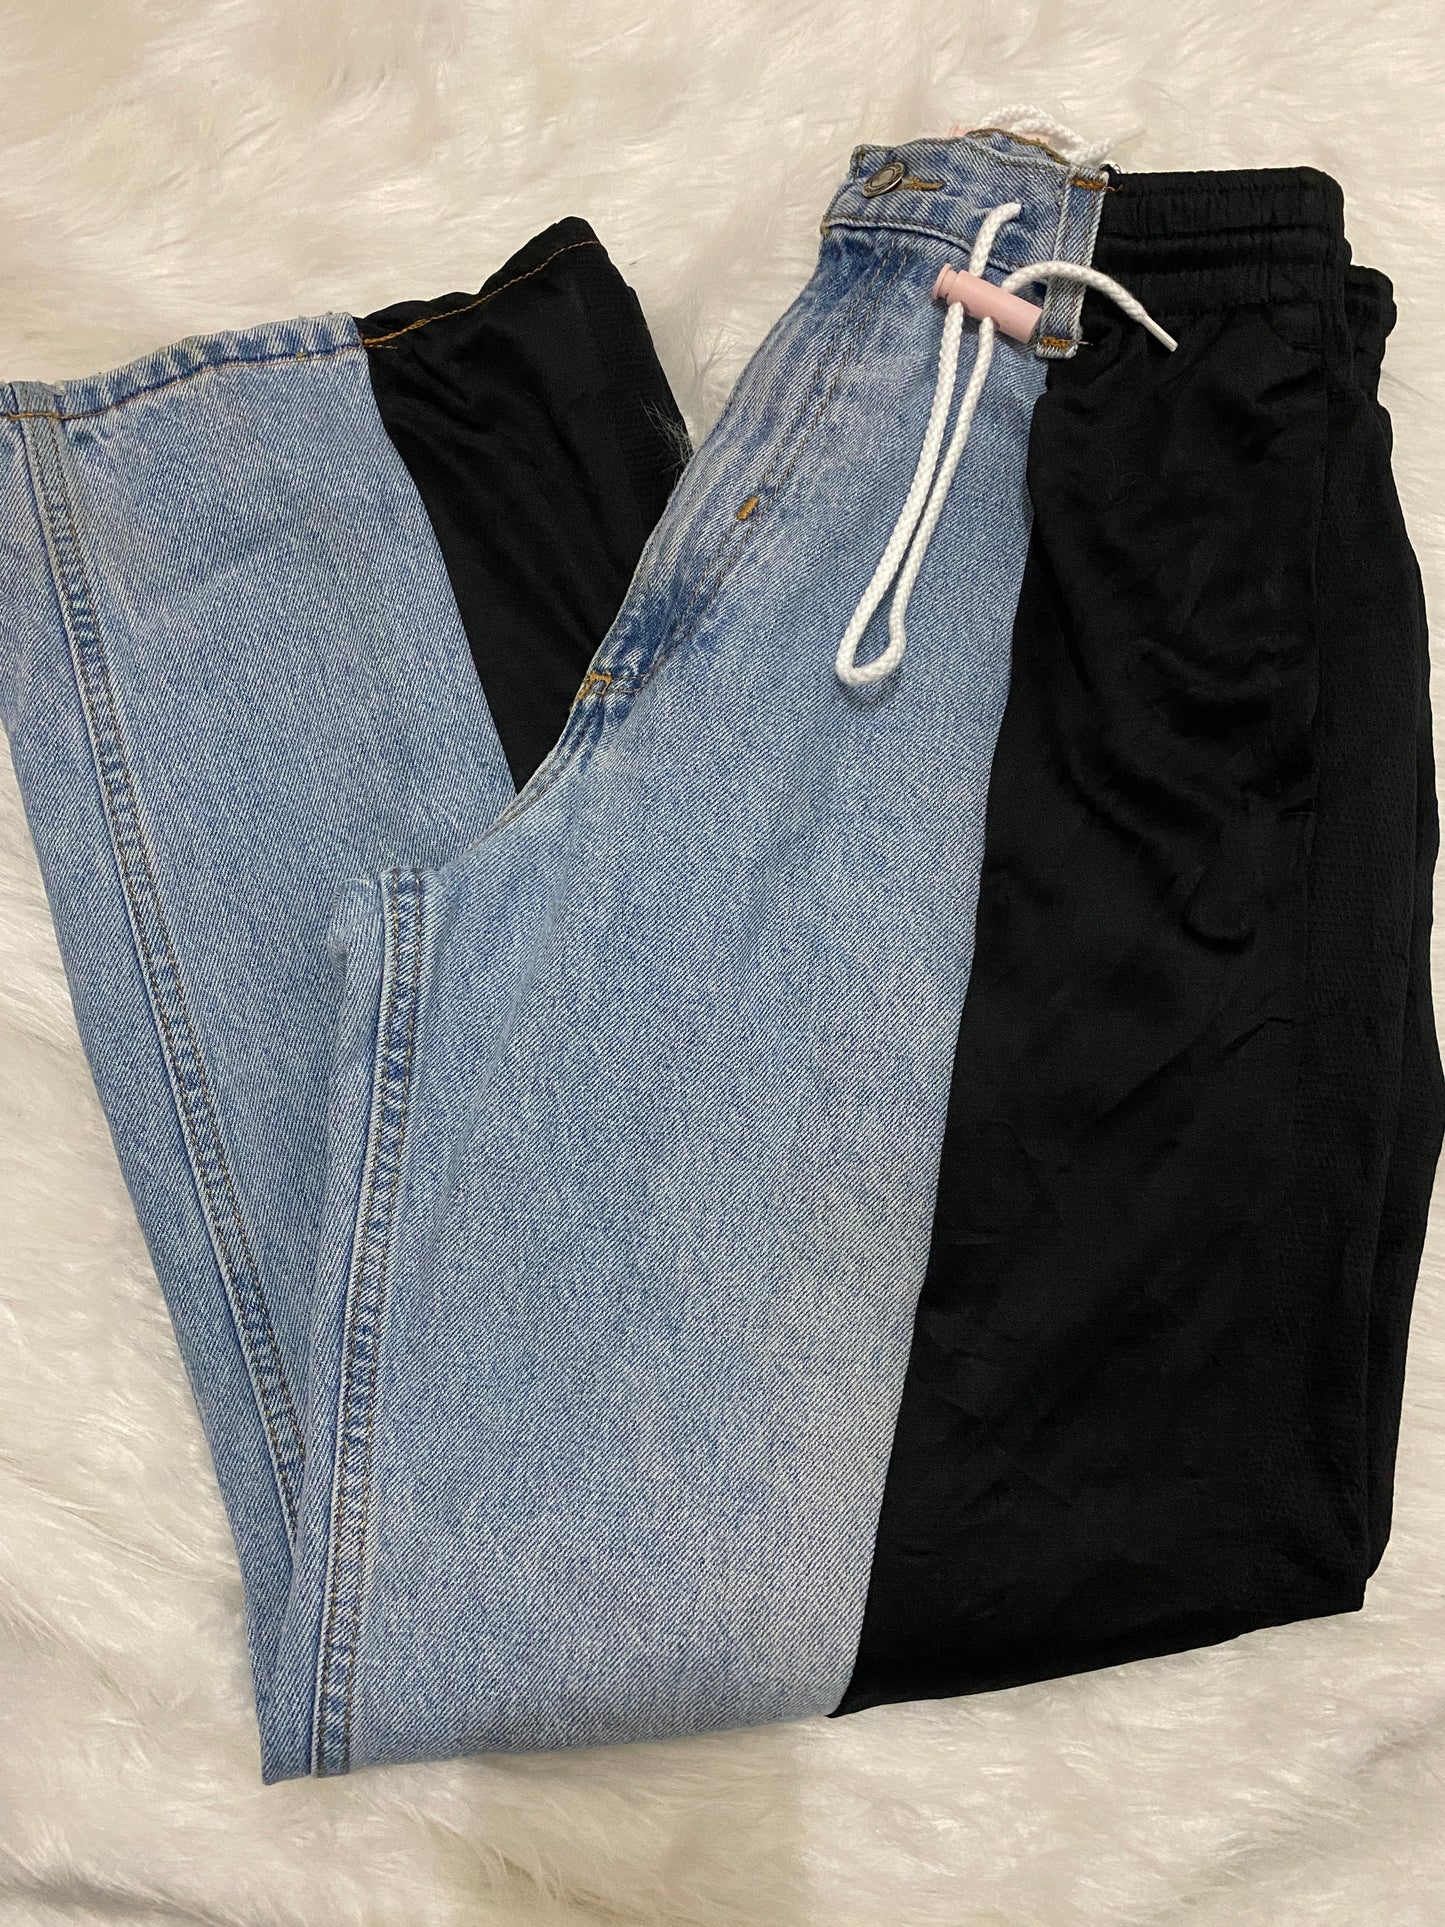 [現貨] Remade Sportpants X Jeans #PANT090